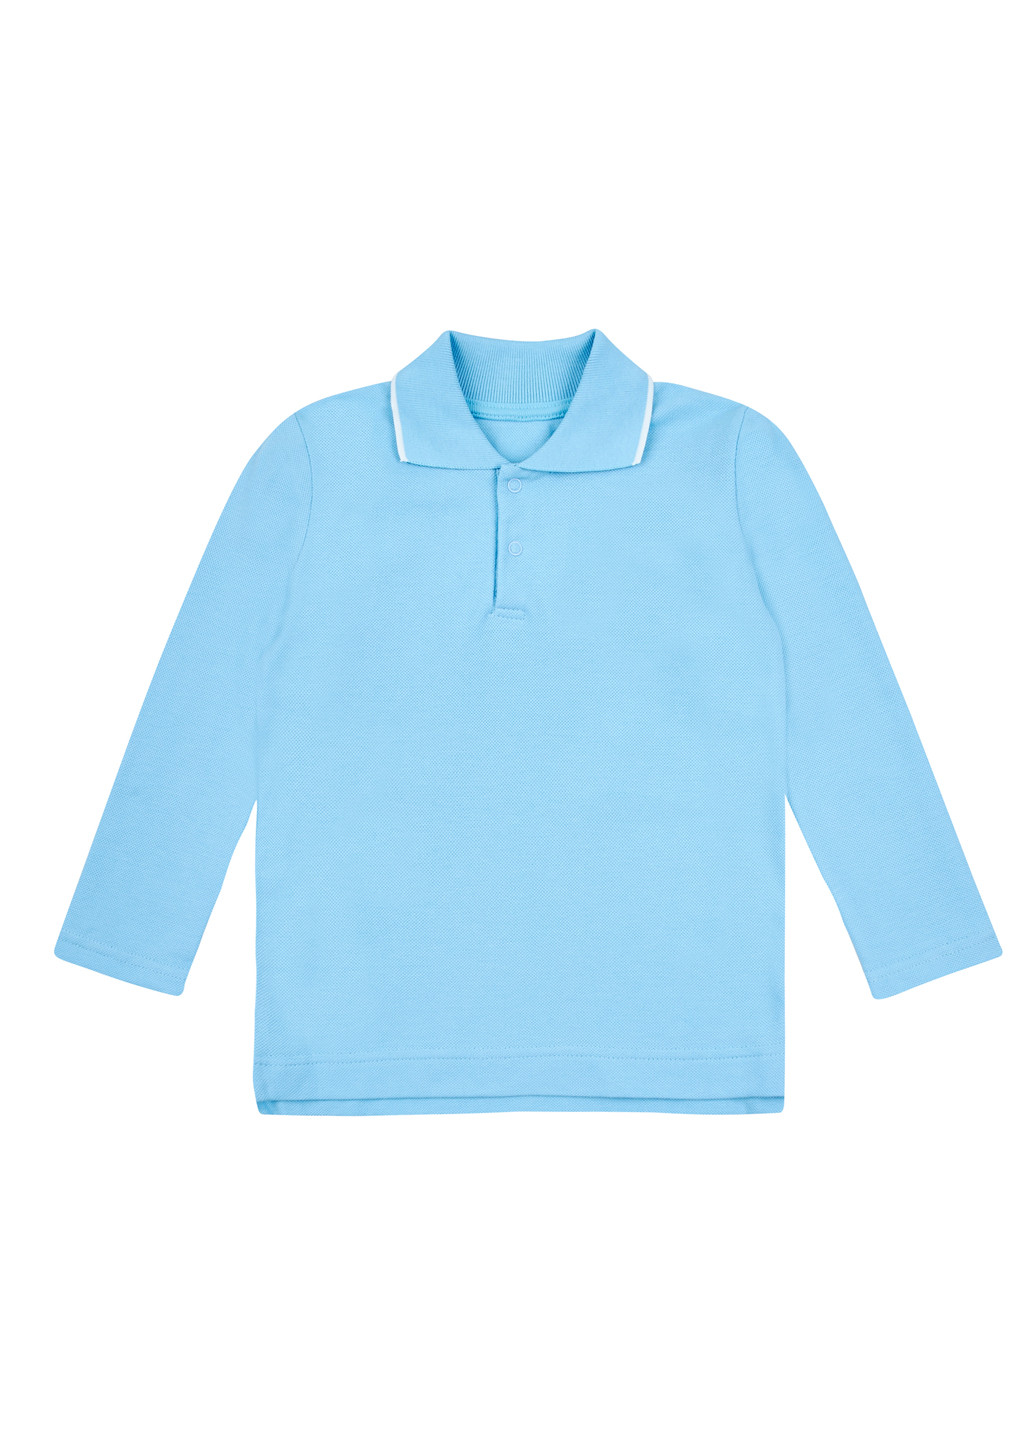 Голубой детская футболка-поло для мальчика Z16 однотонная